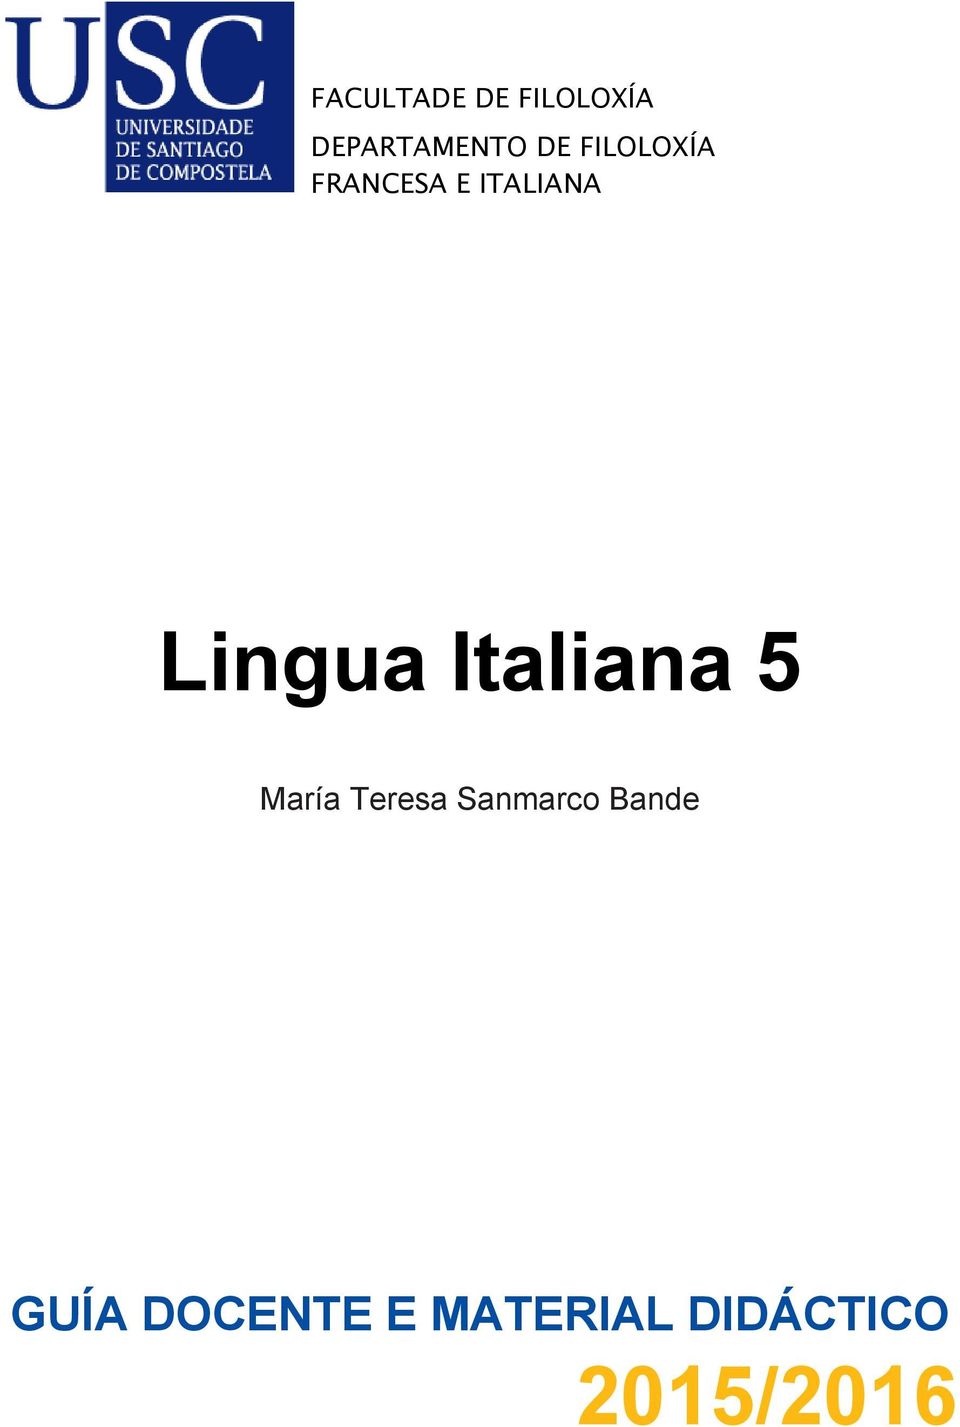 Italiana 5 María Teresa Sanmarco Bande